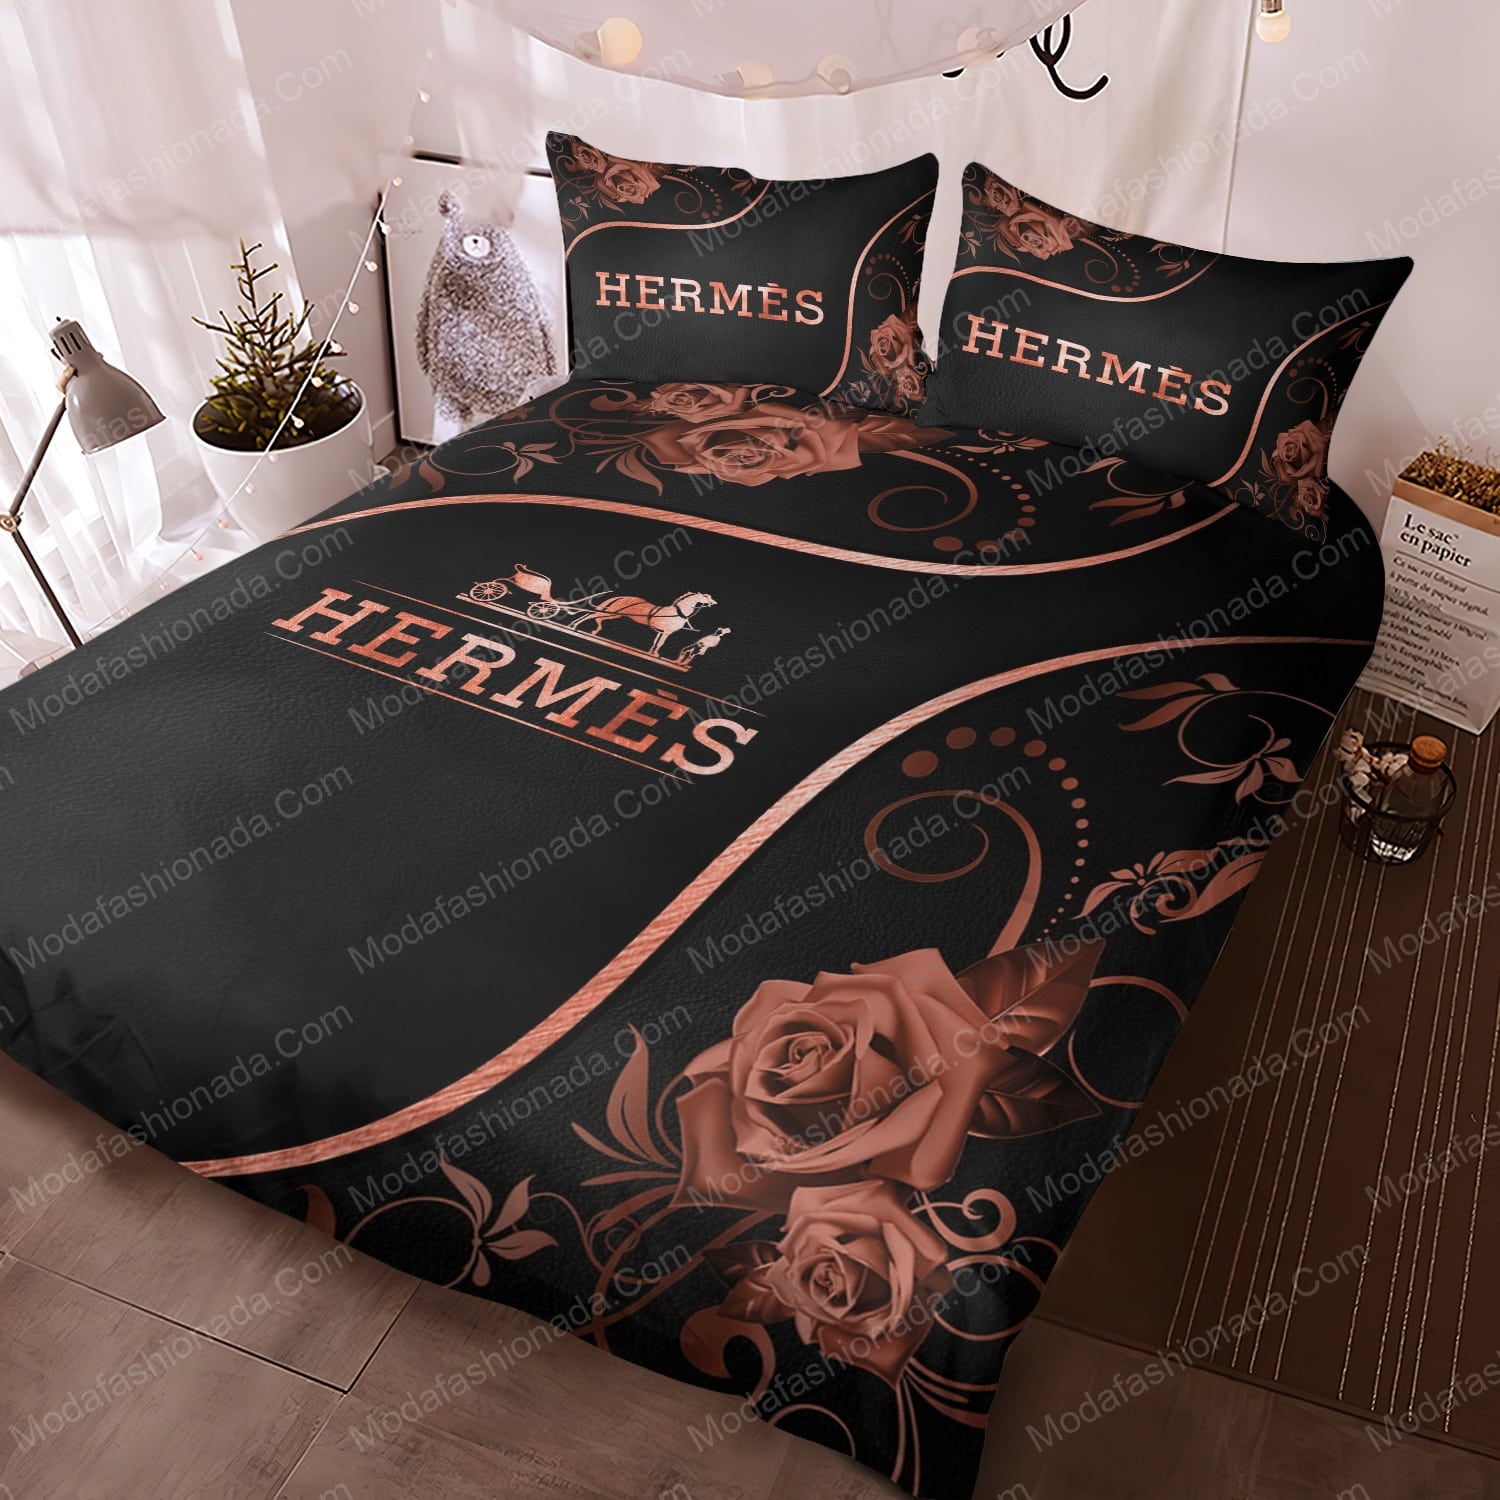 Buy Rose Hermès Bedding Sets Bed Sets